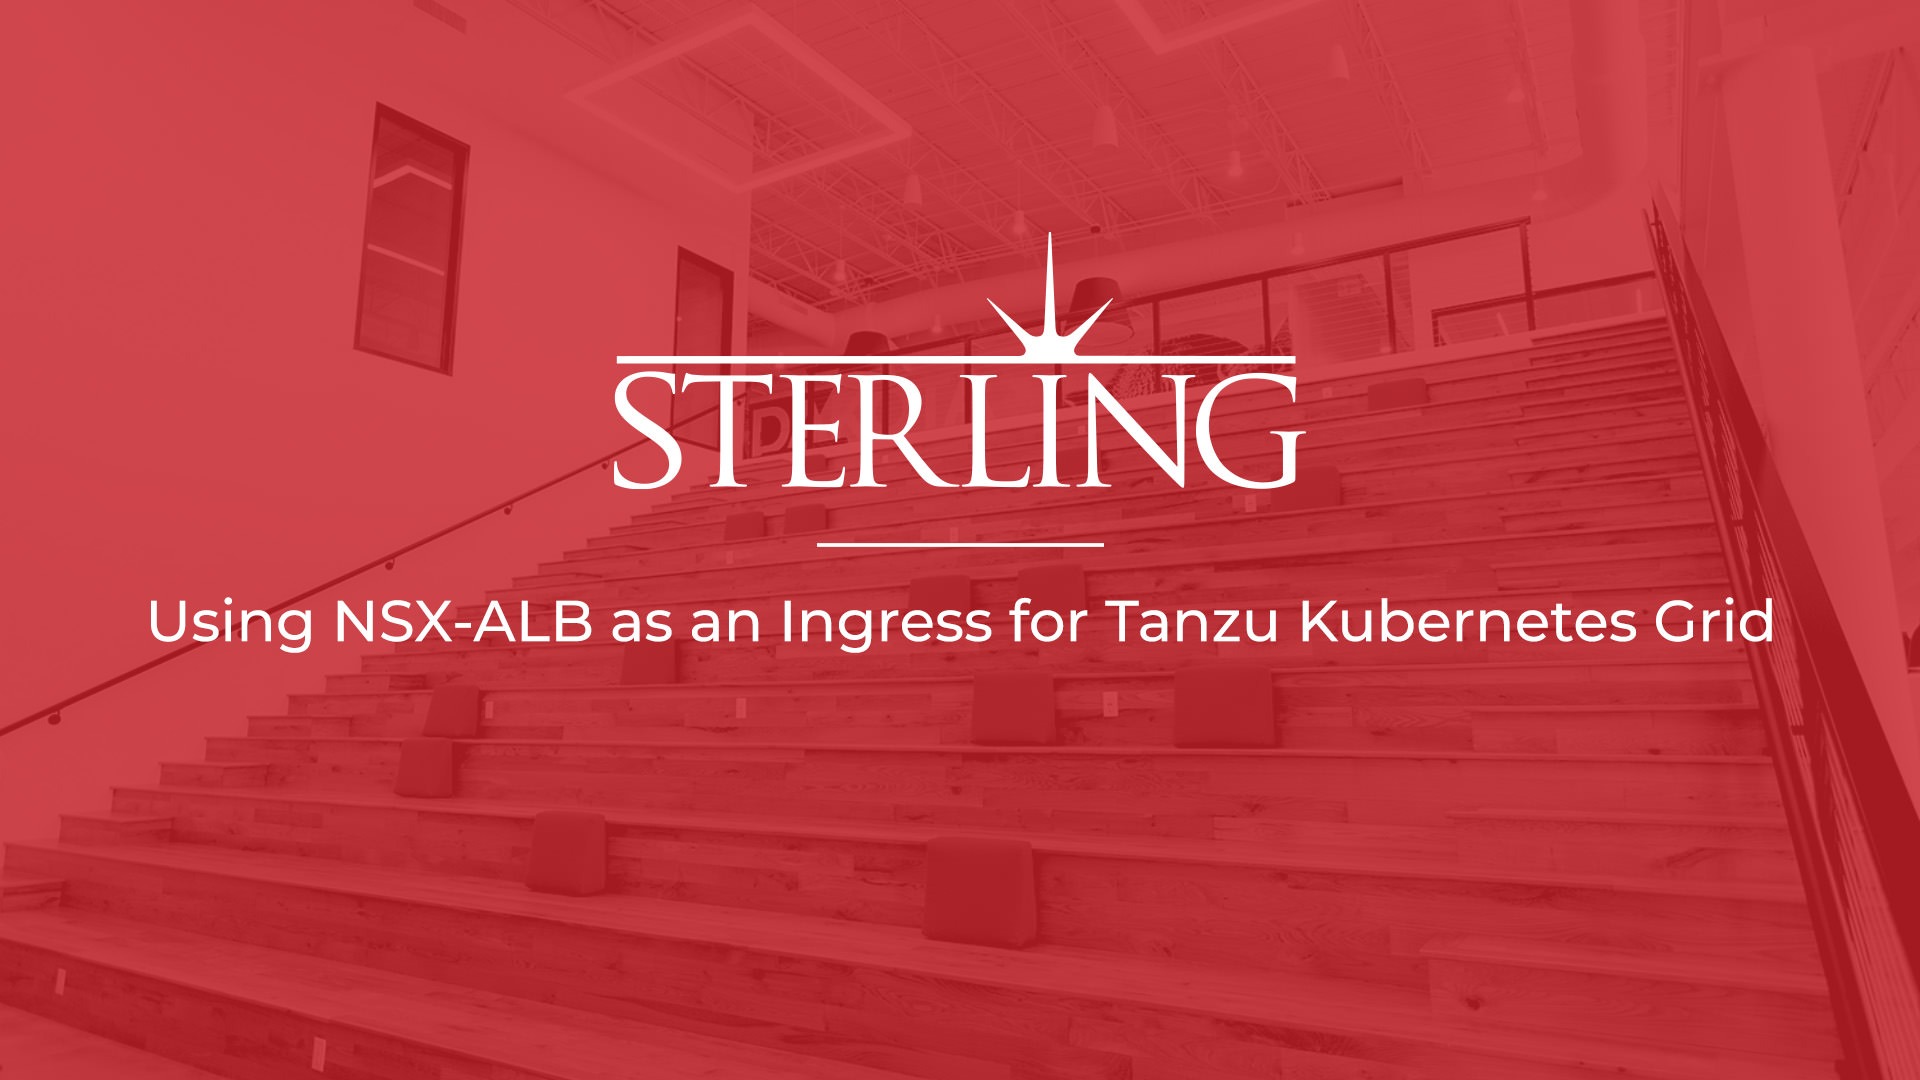 Using NSX-ALB as an Ingress for Tanzu Kubernetes Grid